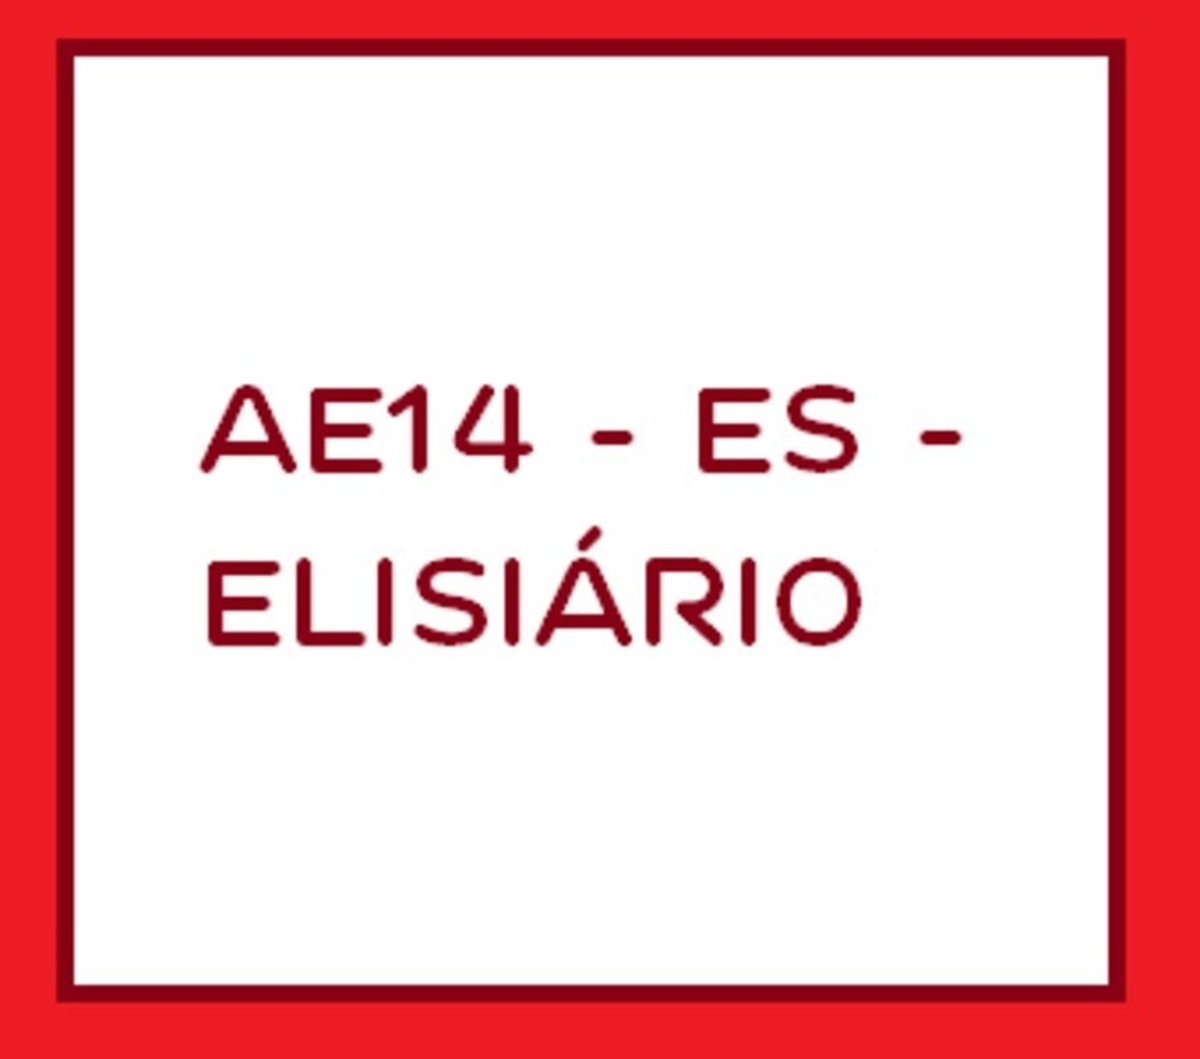 AE14 - ES - Elisiário